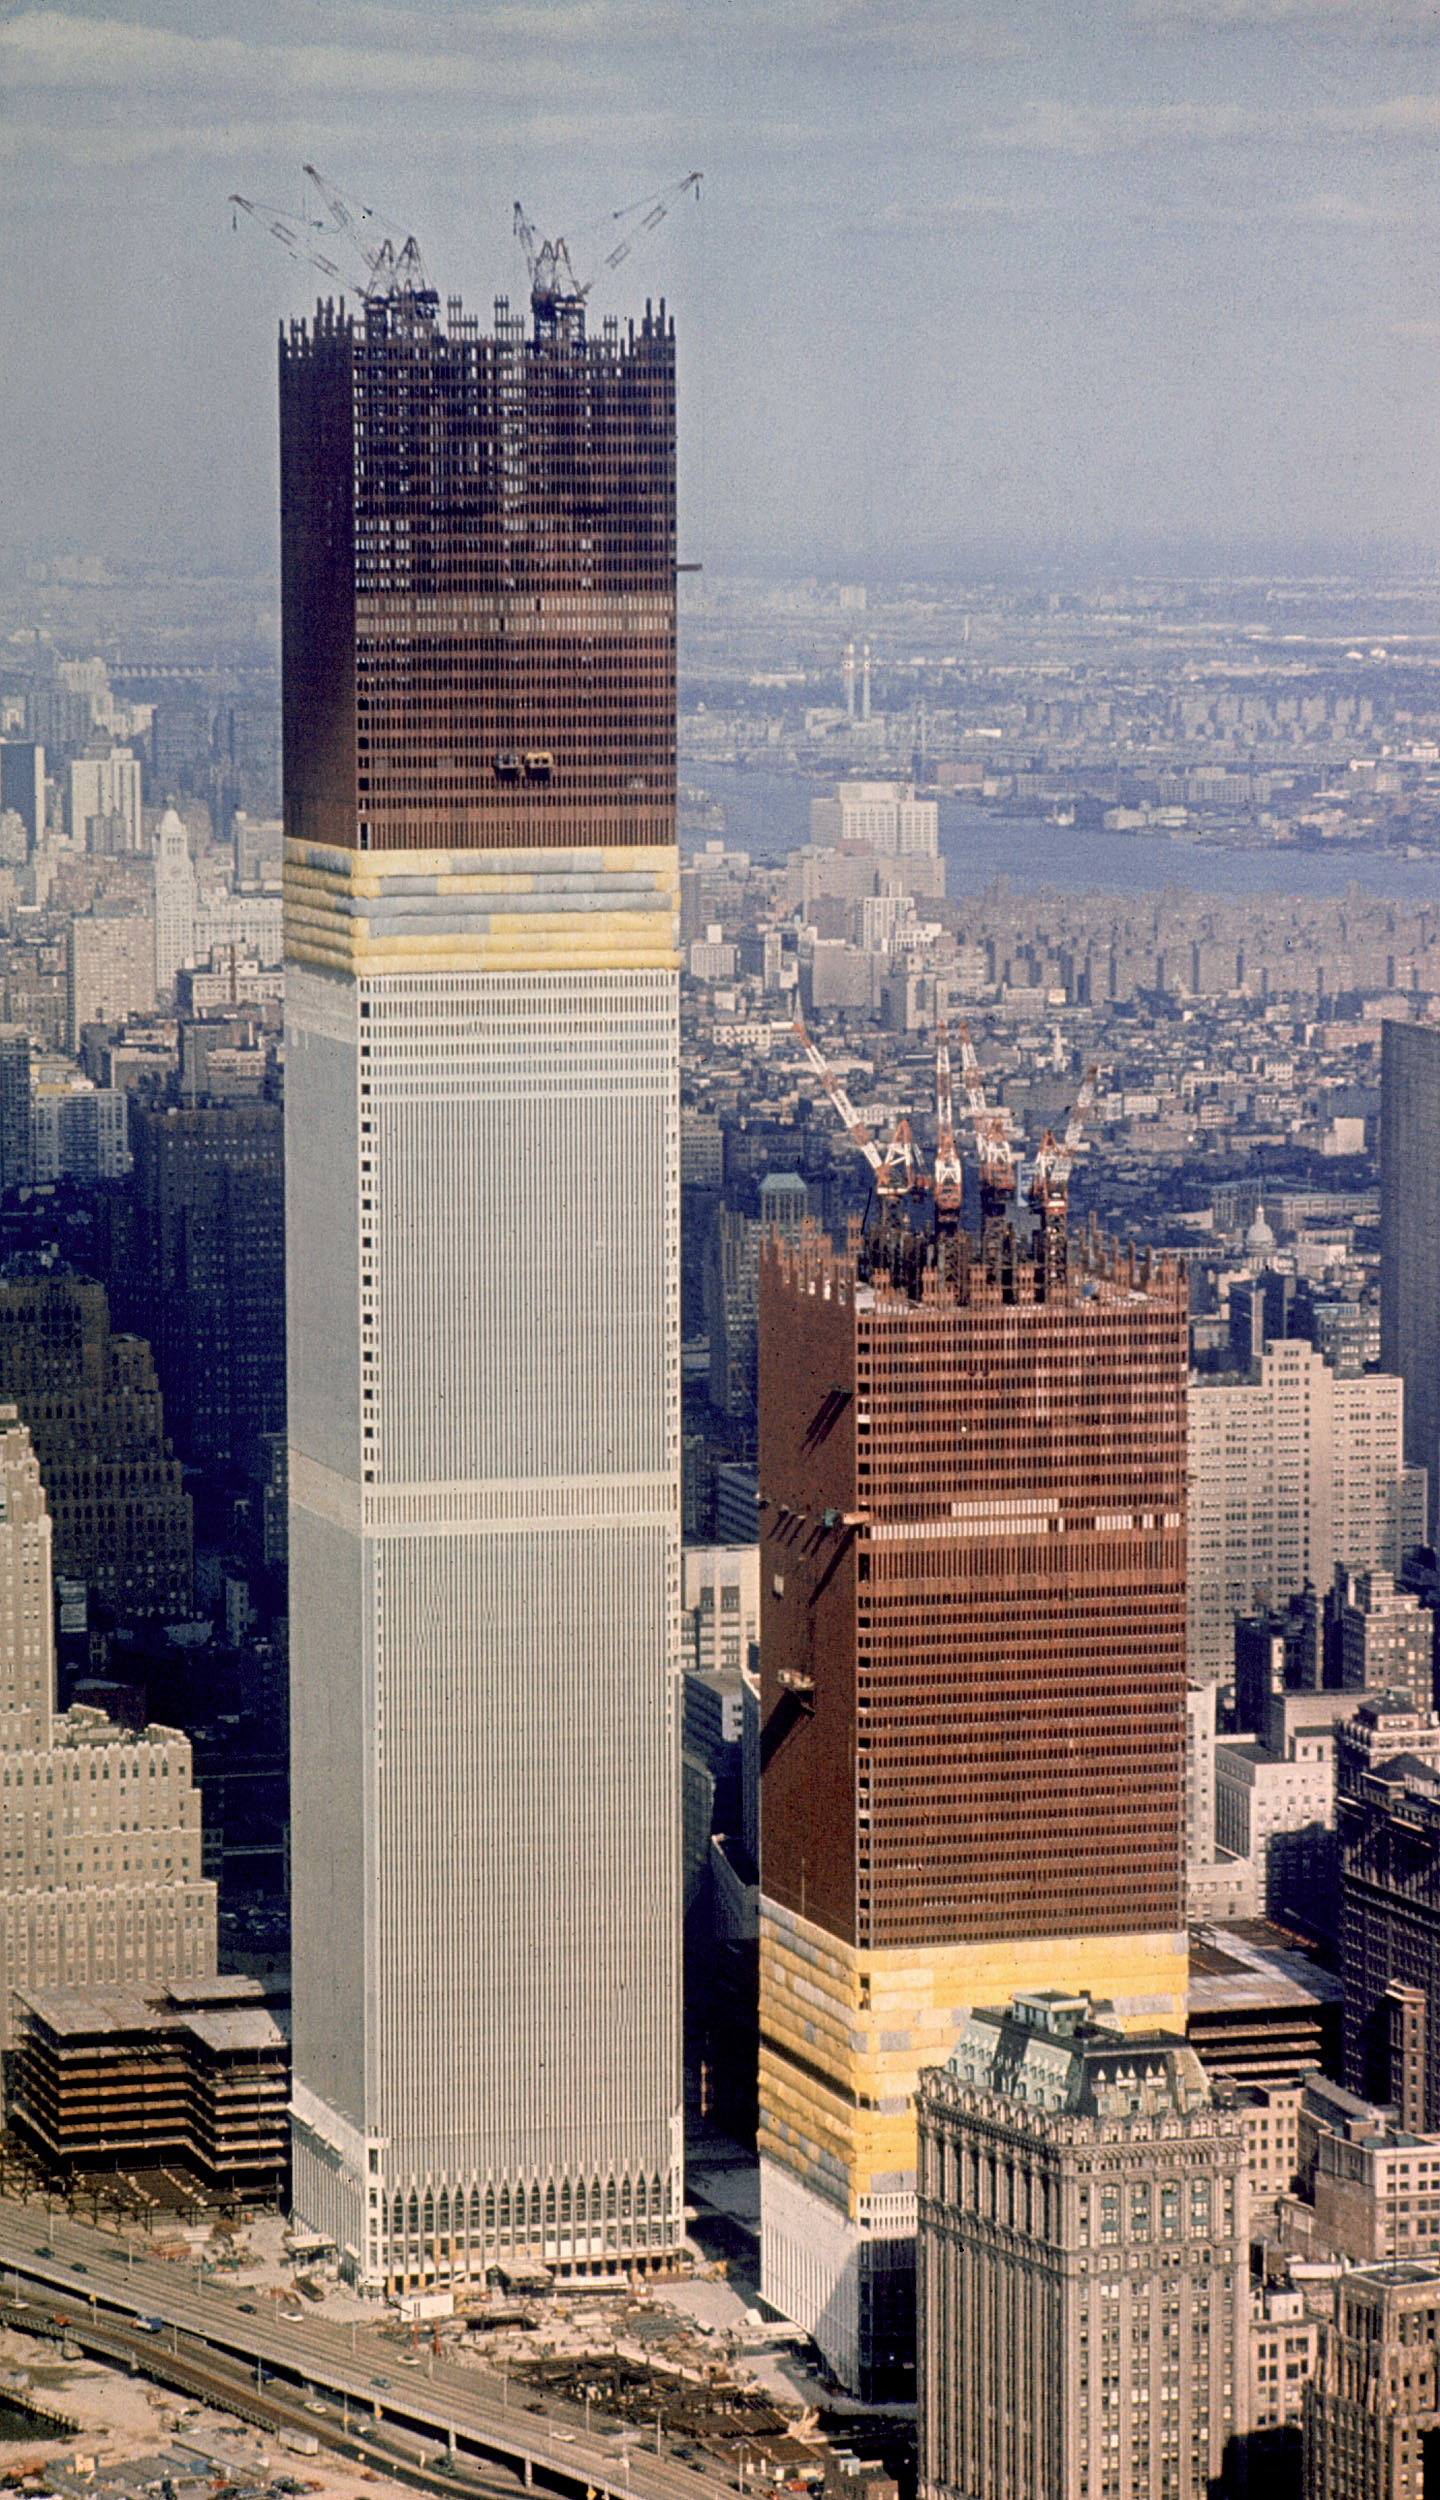 Сколько этажей было в башнях близнецах. Всемирный торговый центр в Нью-Йорке. ВТЦ Нью-Йорк башни Близнецы 2001. Близнецы Всемирный торговый центр в Нью-Йорке. Эмпайр Стейт Билдинг 11 сентября 2001.